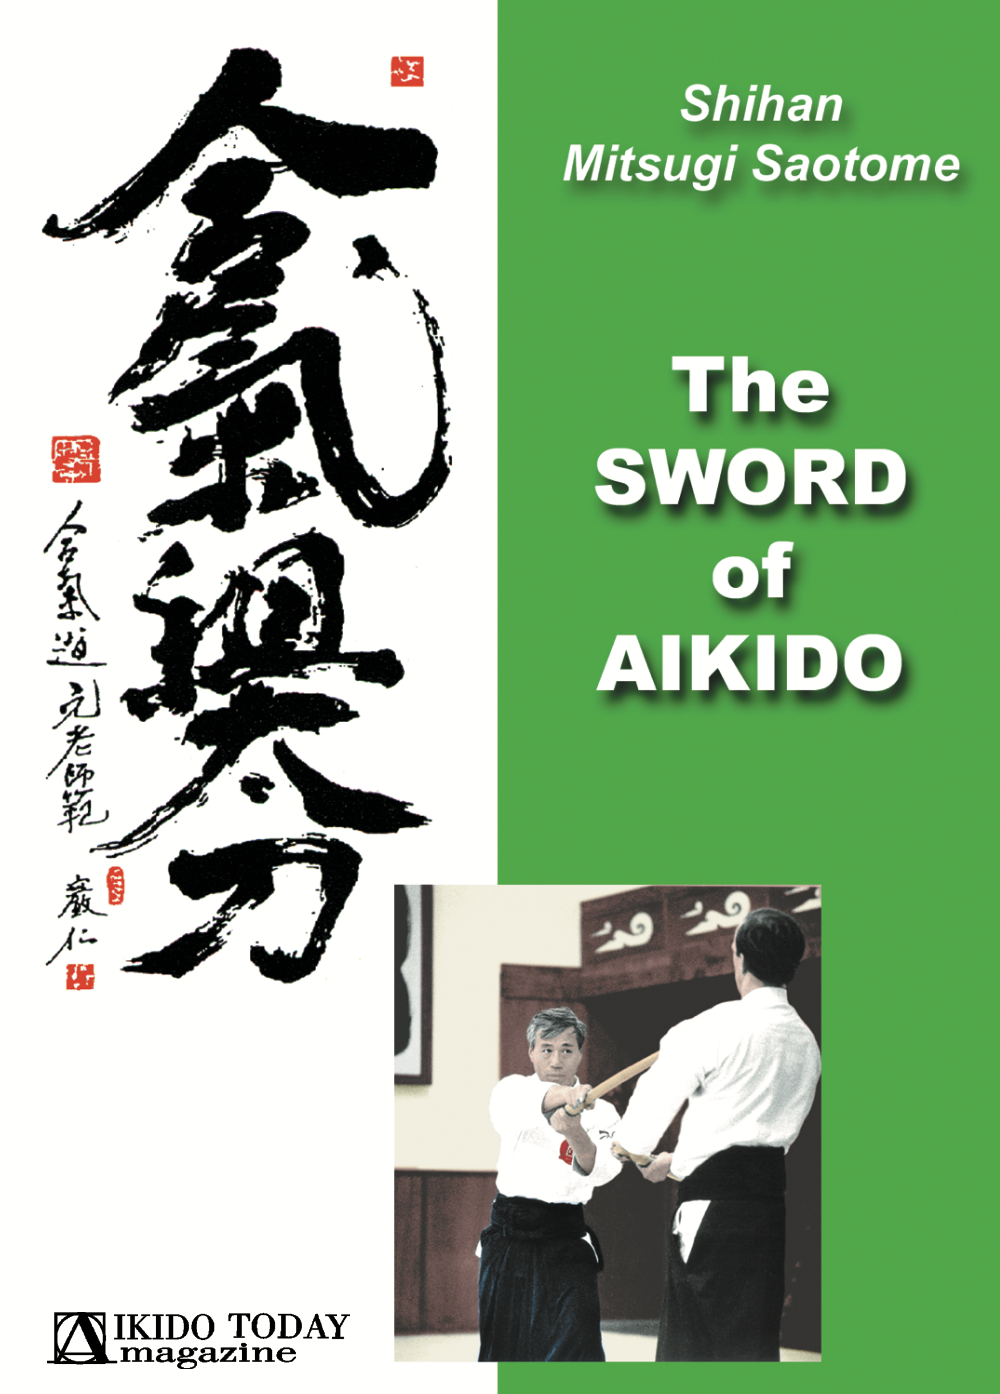 DVD La espada del Aikido de Mitsugi Saotome